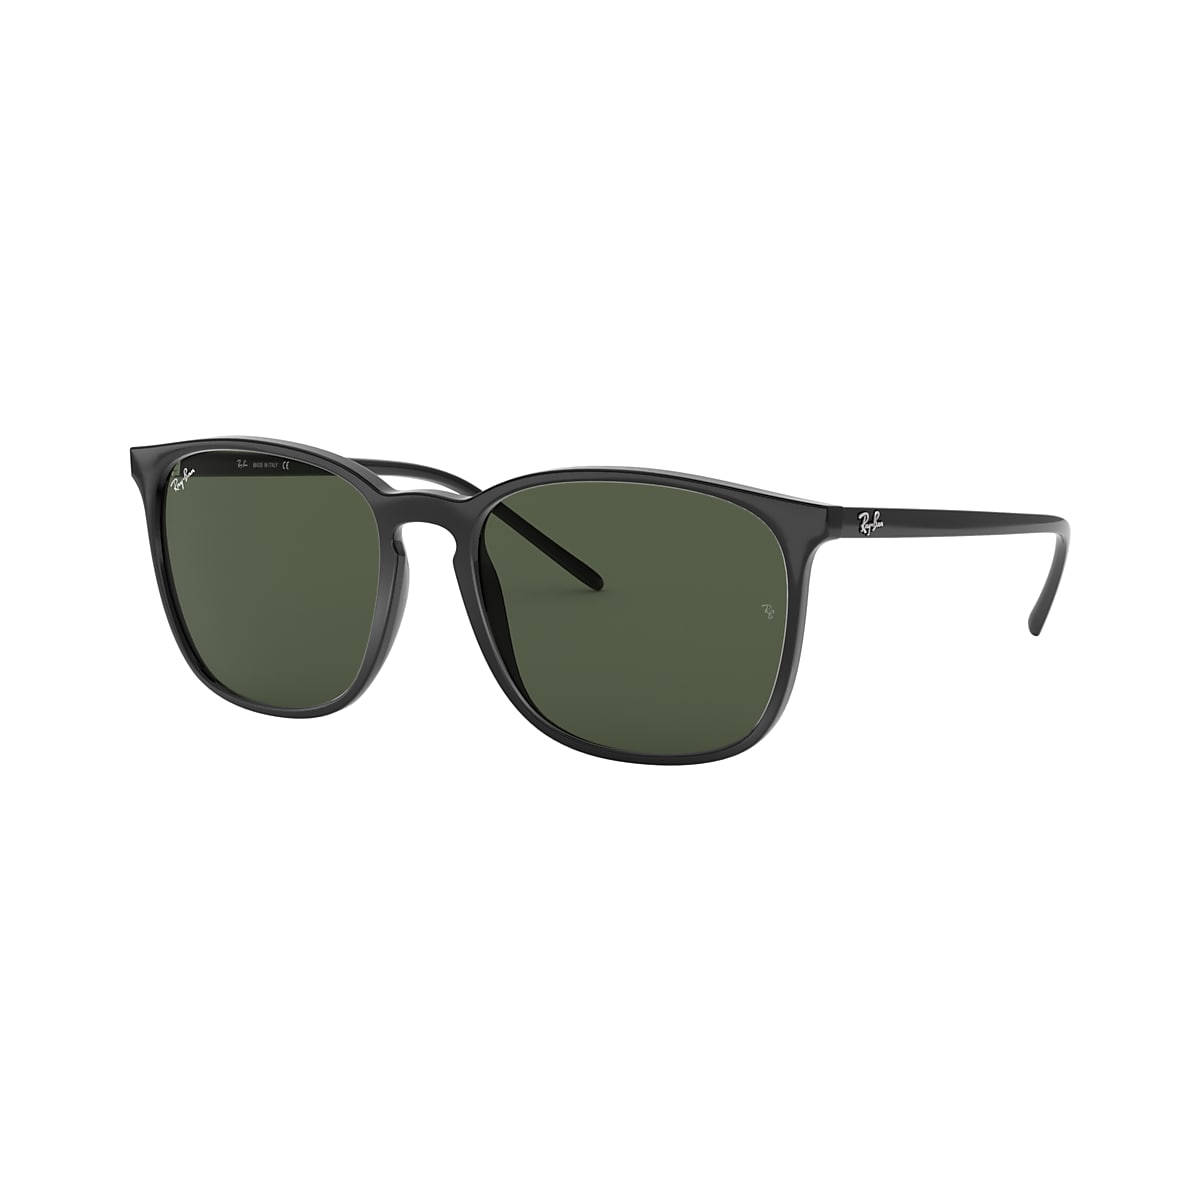 Medisch Kinderen auteur Ray-Ban RB4387 56 Green Classic & Black Sunglasses | Sunglass Hut USA